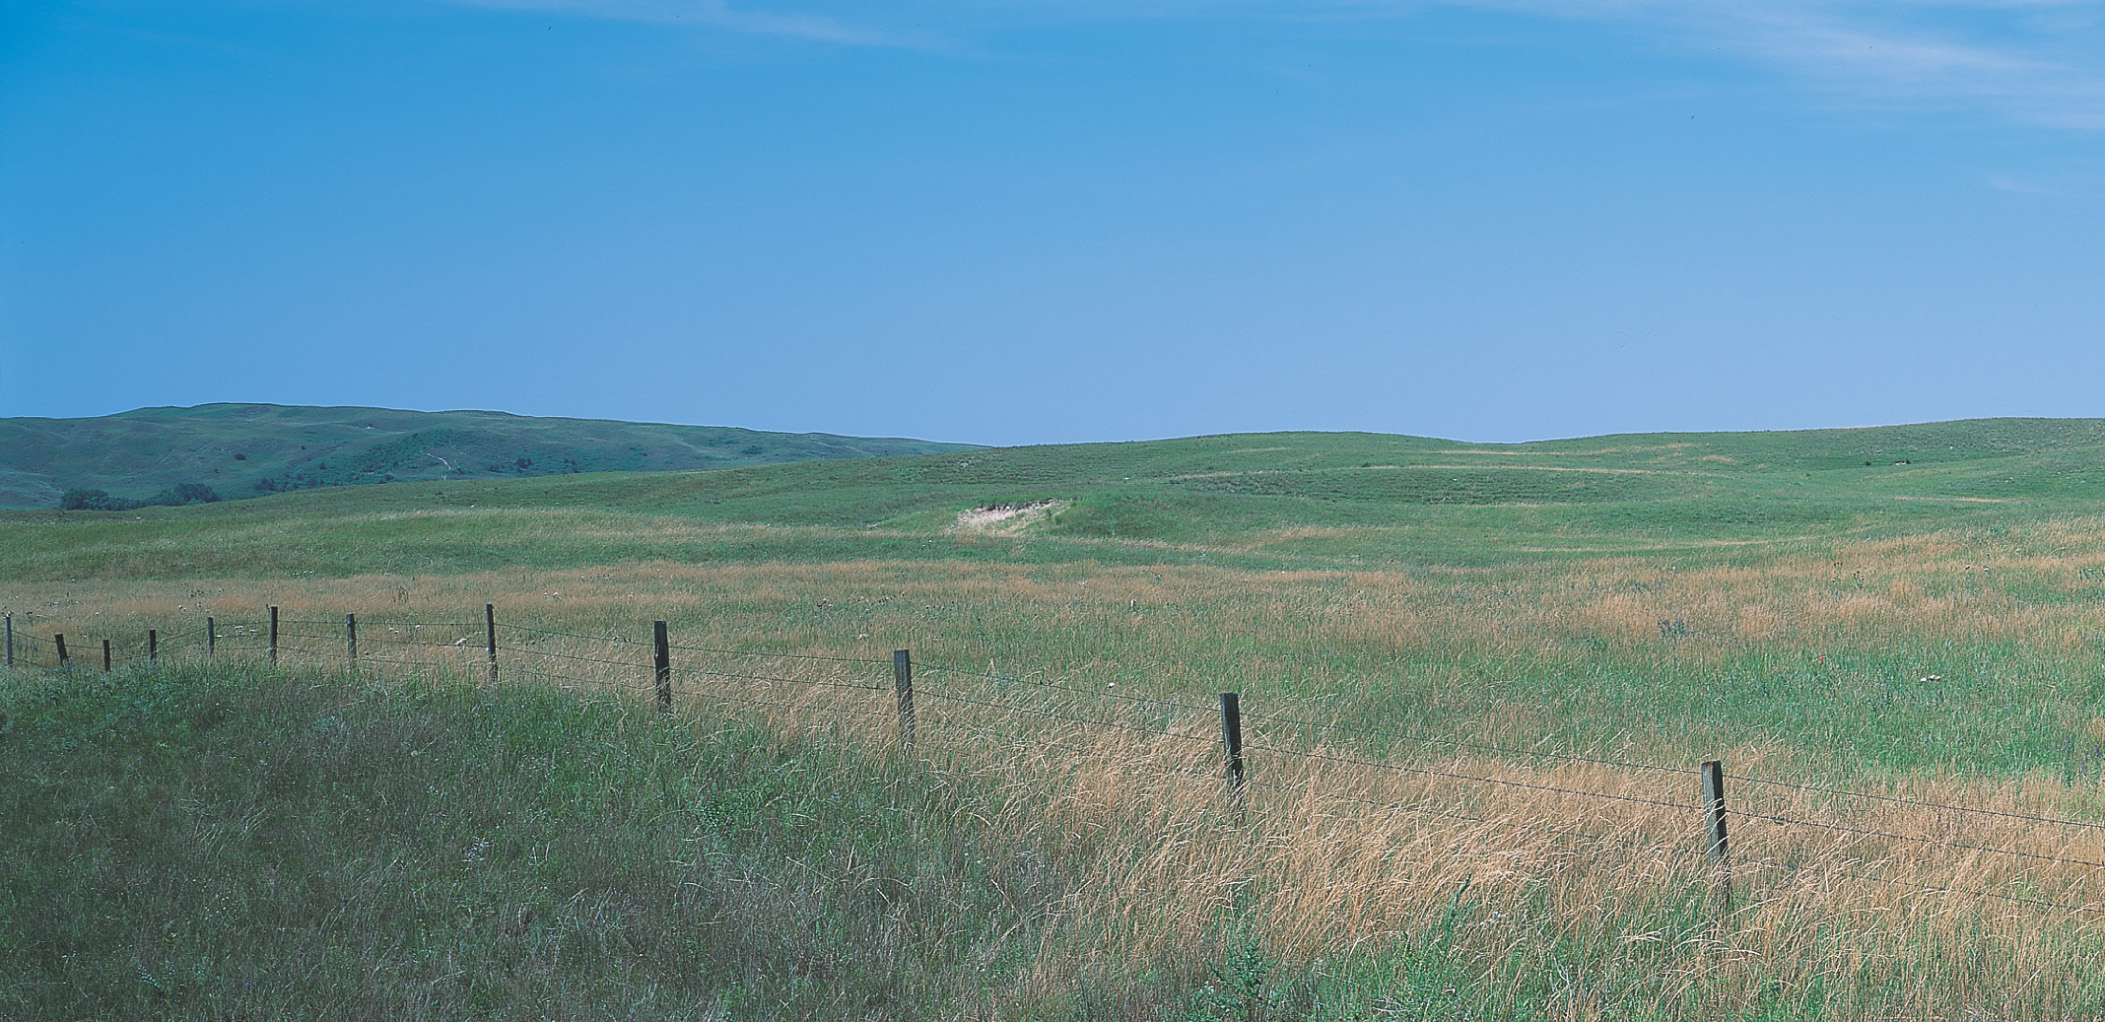 A wire fence cuts through a prairie field.